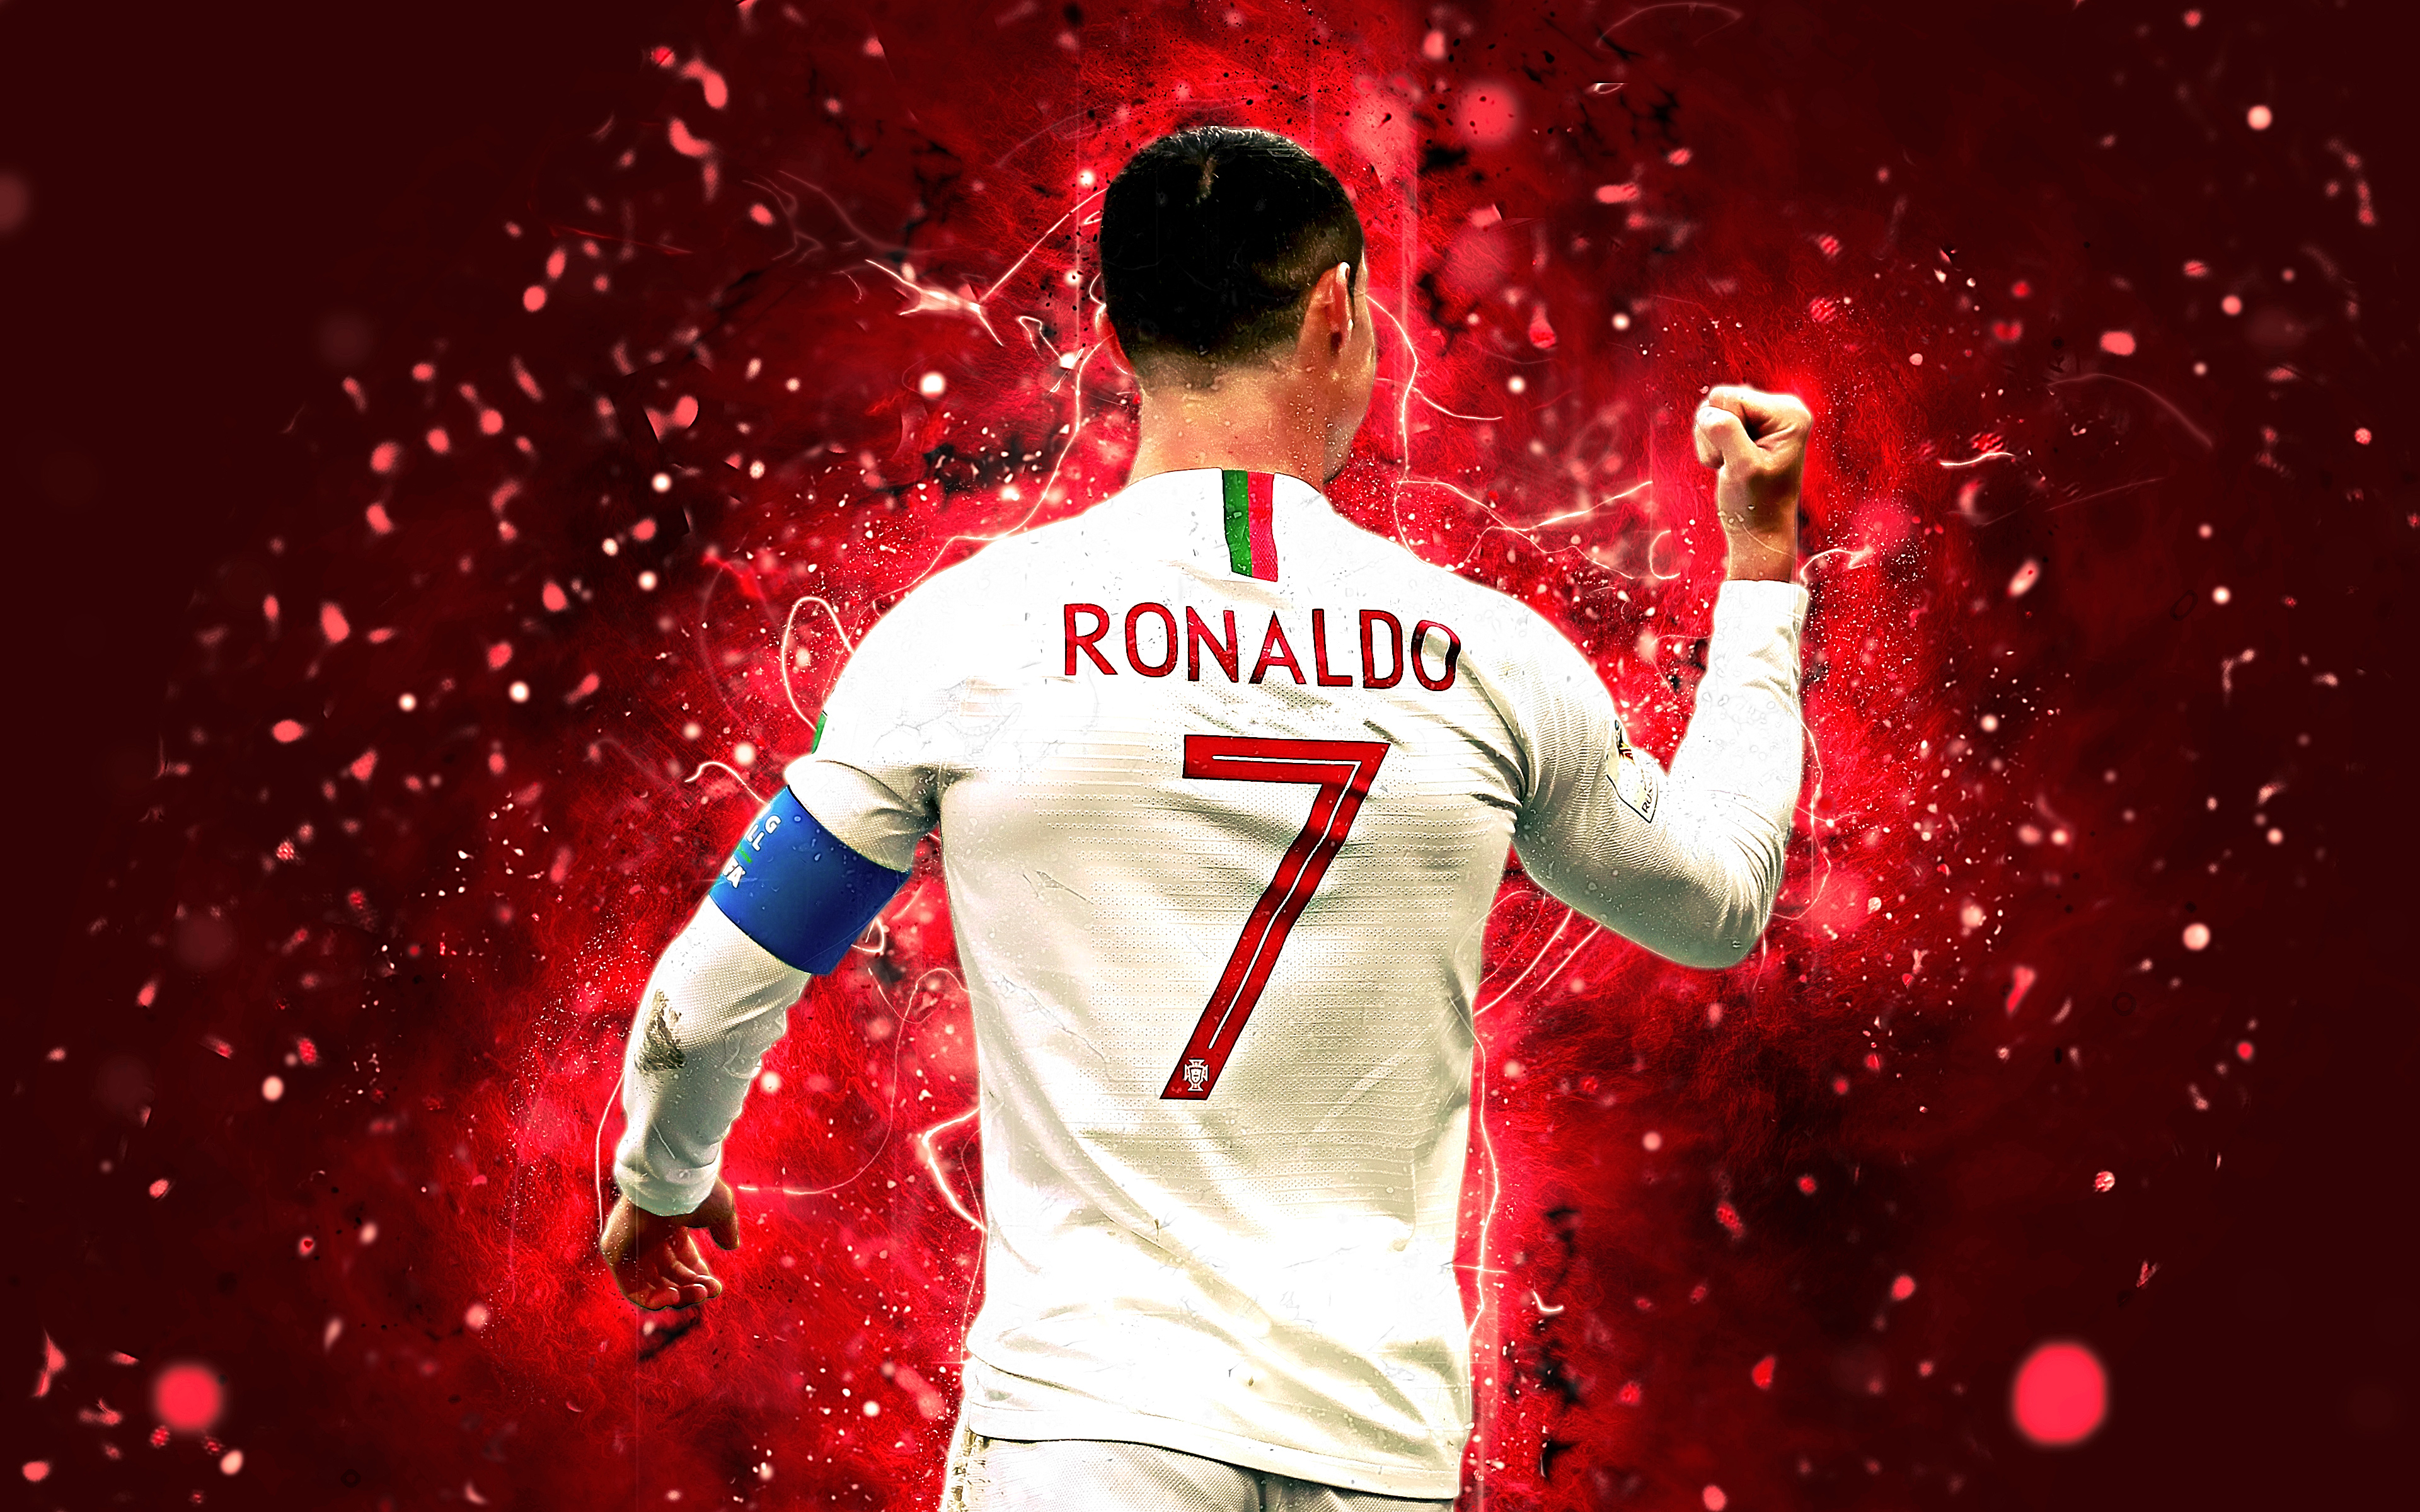 Cristiano Ronaldo Wallpaper - VoBss